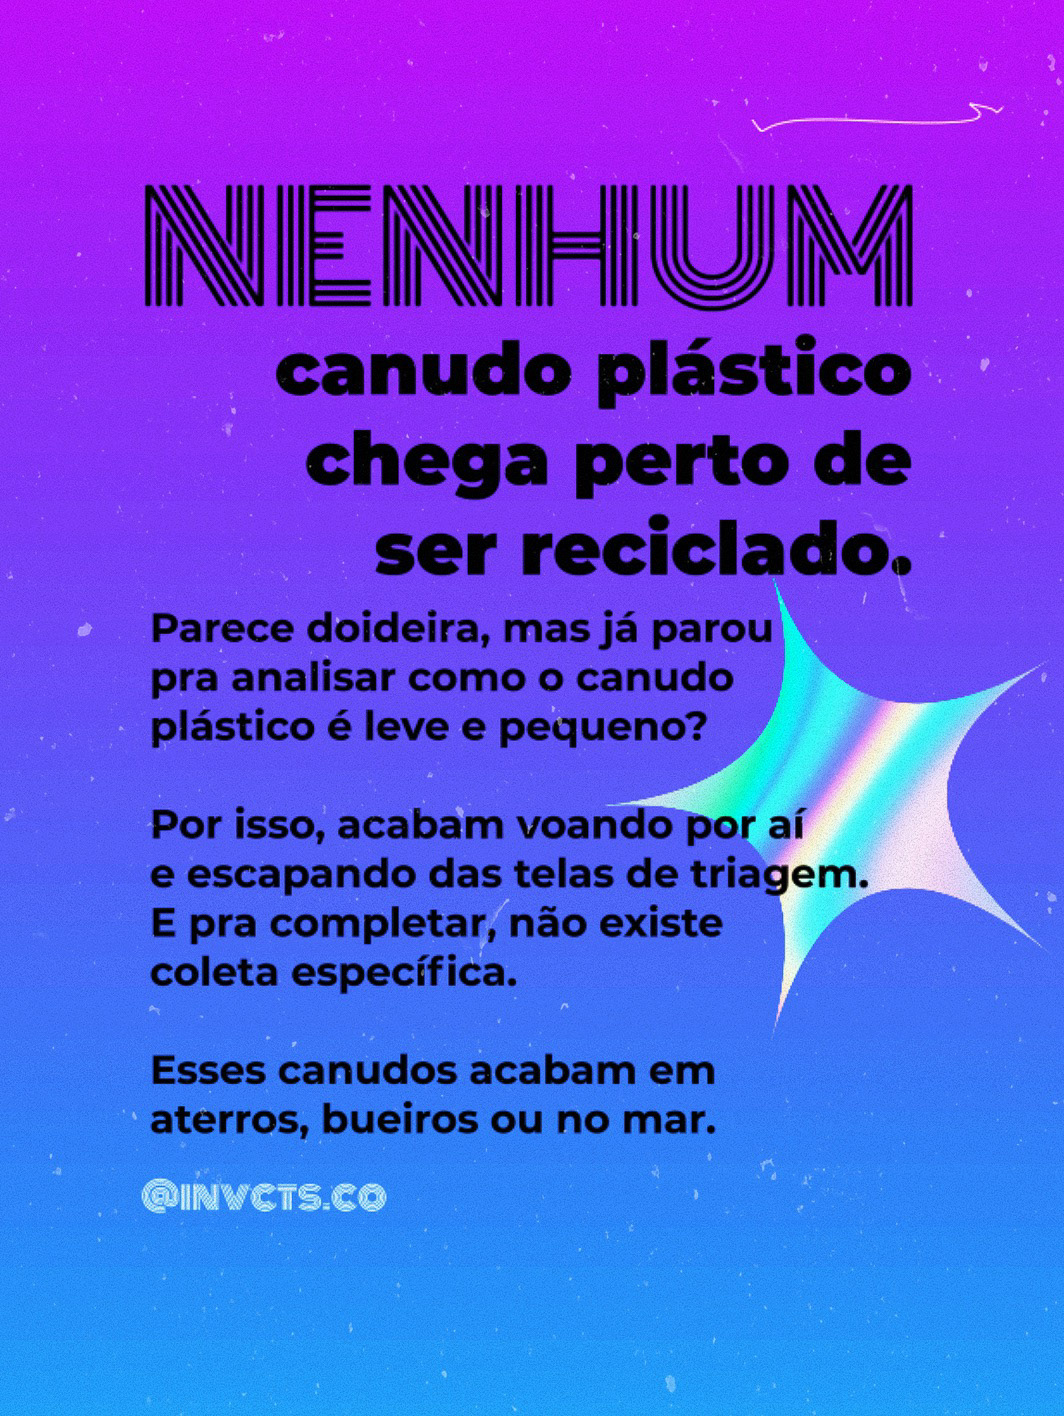 canudo Eco friendy plastic free straw canudo de metal historia canudo no plastic sustentabilidade sustentable